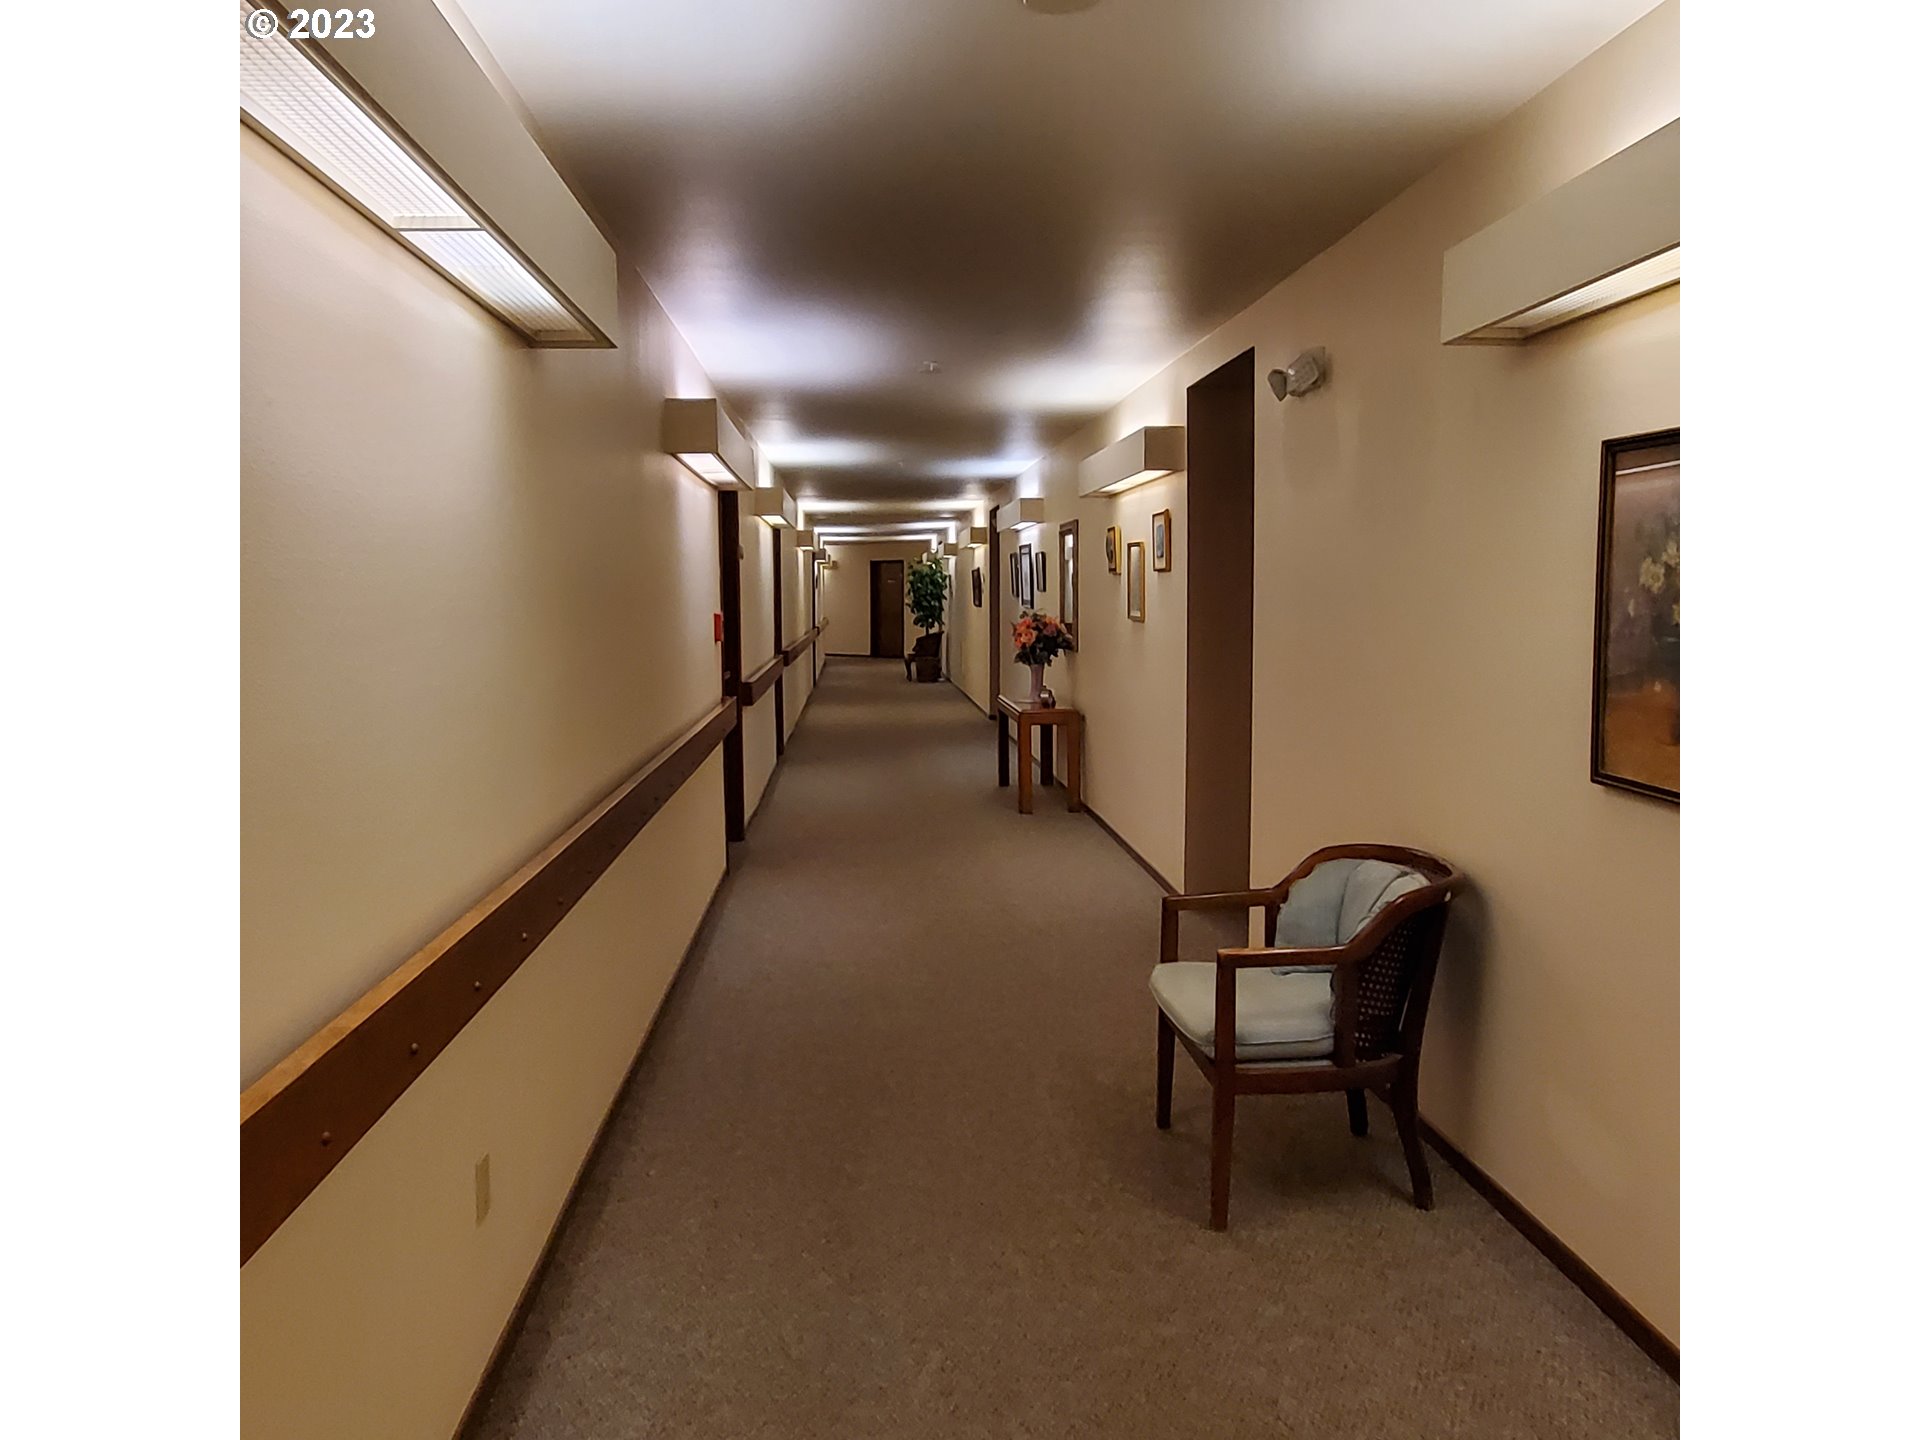 Photo #8 Hallway